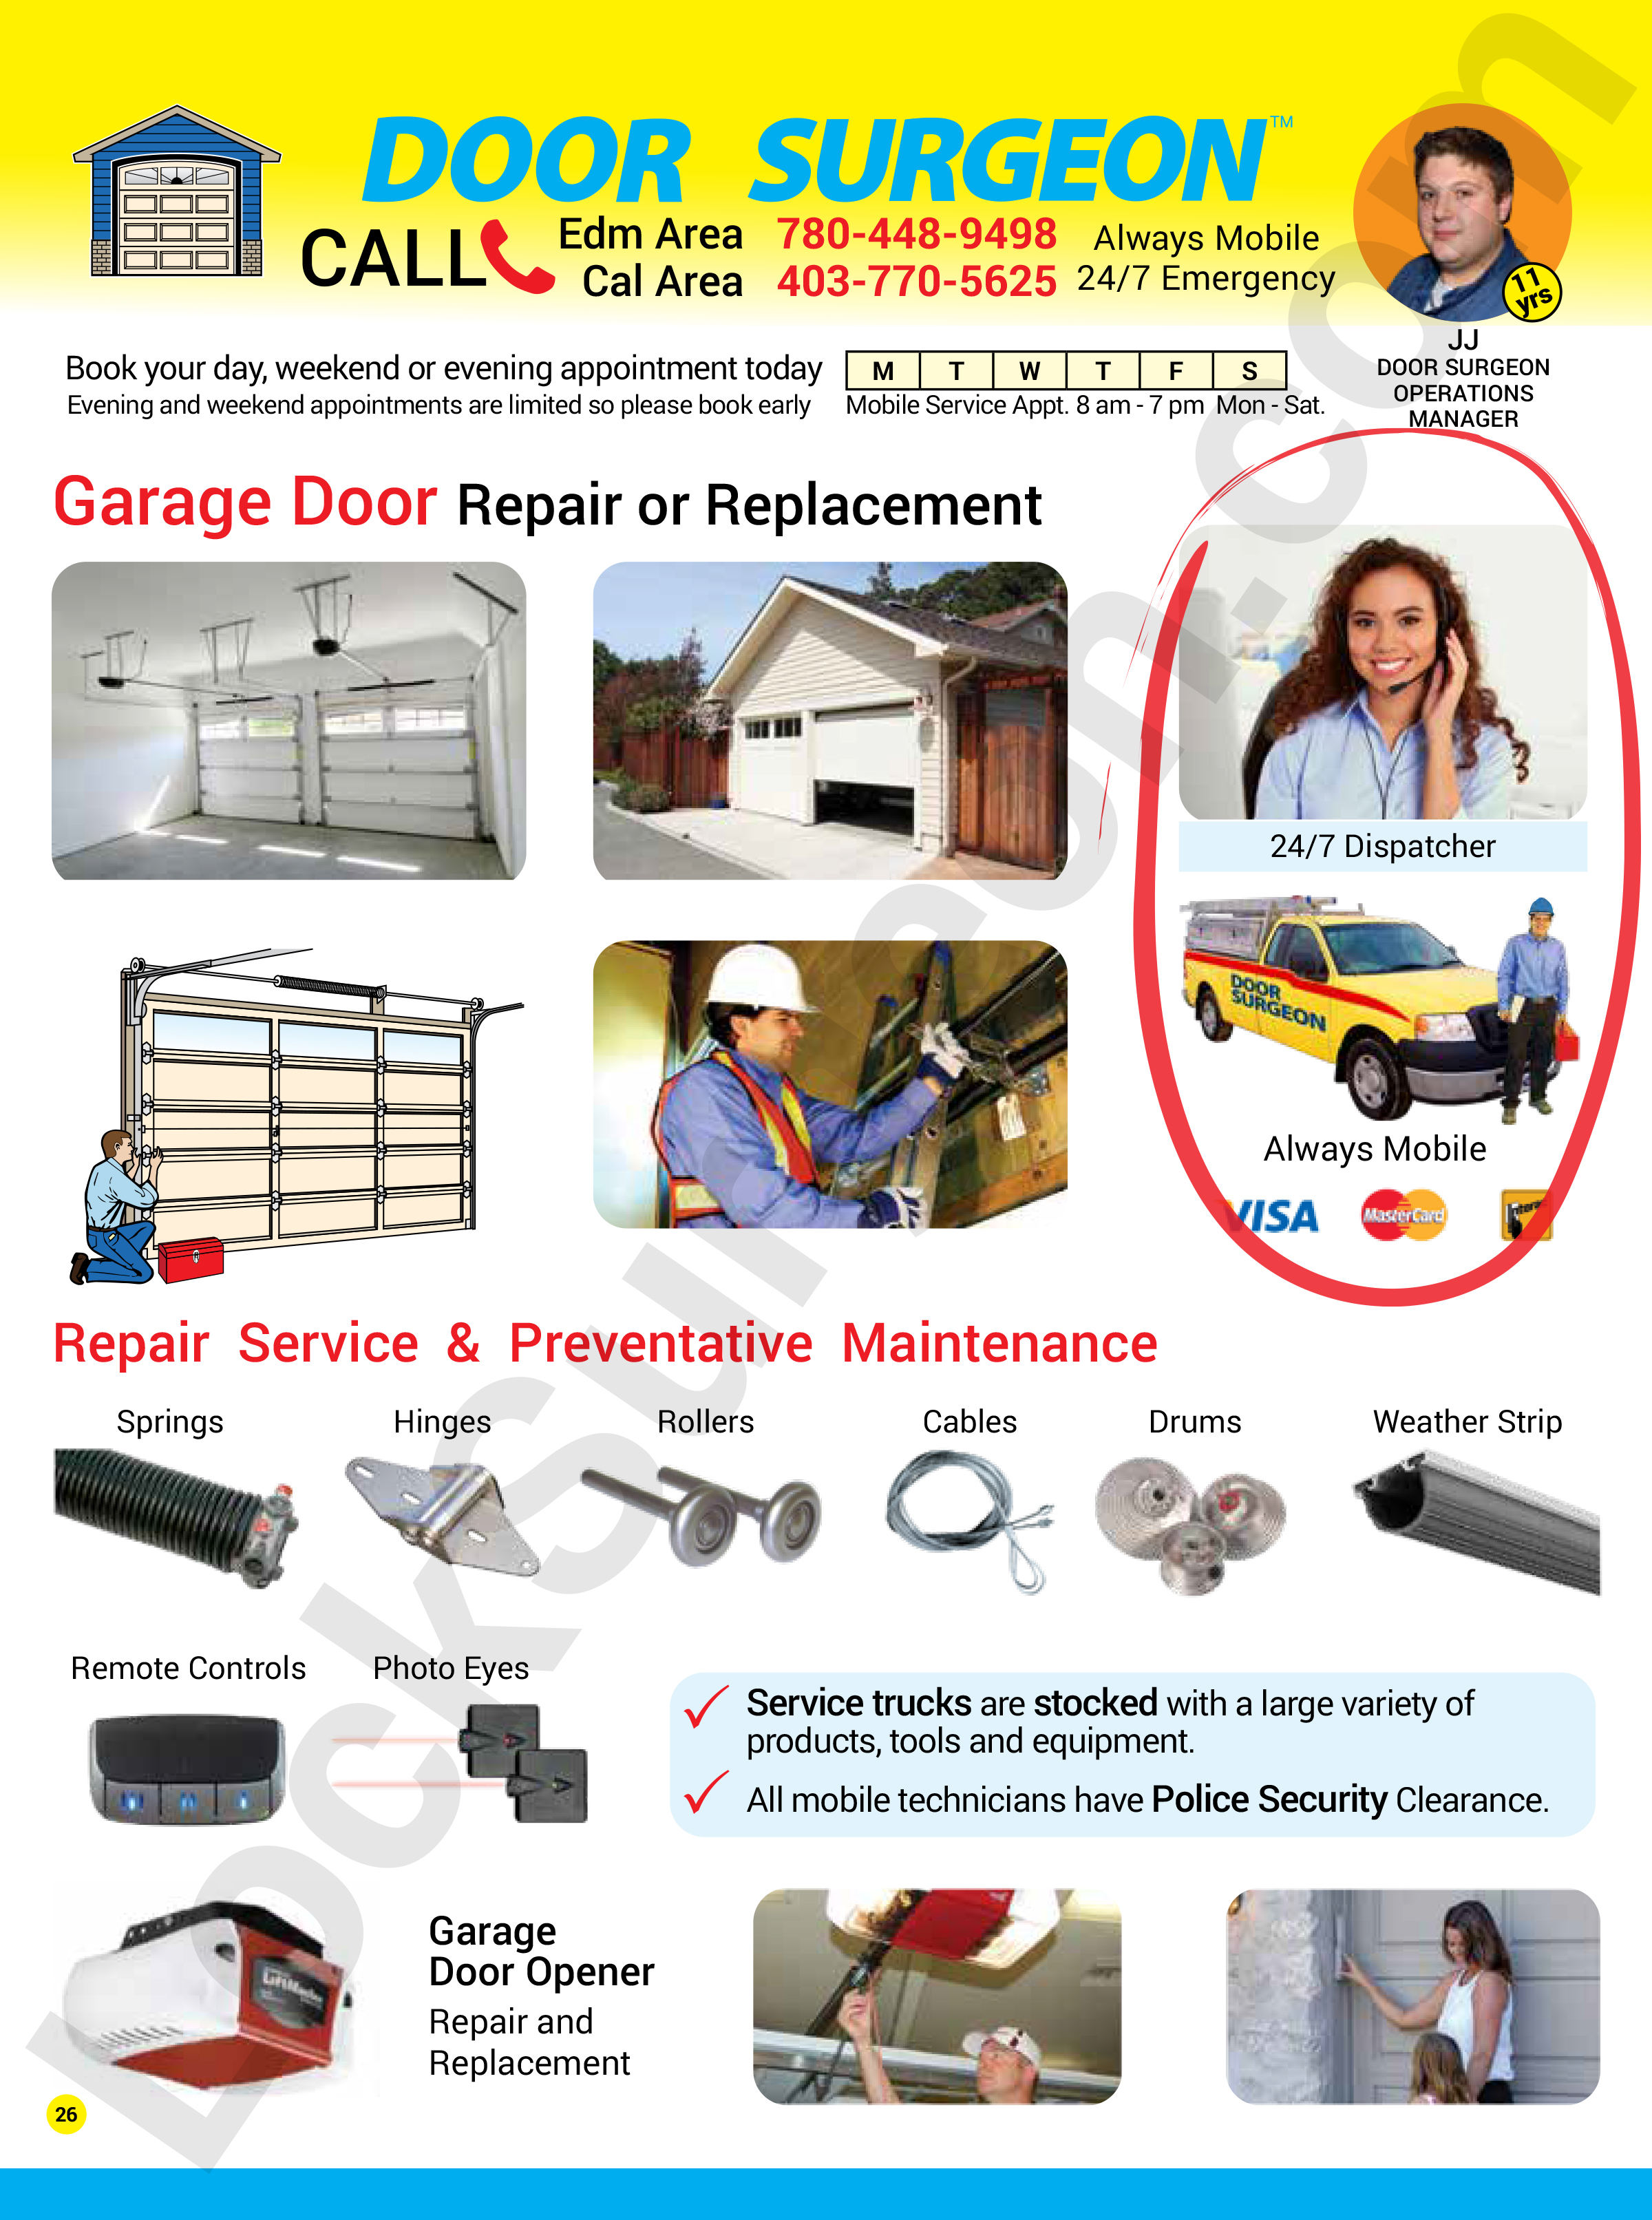 Lock Surgeon garage door repair replacement services by professional garage door repair technicians.